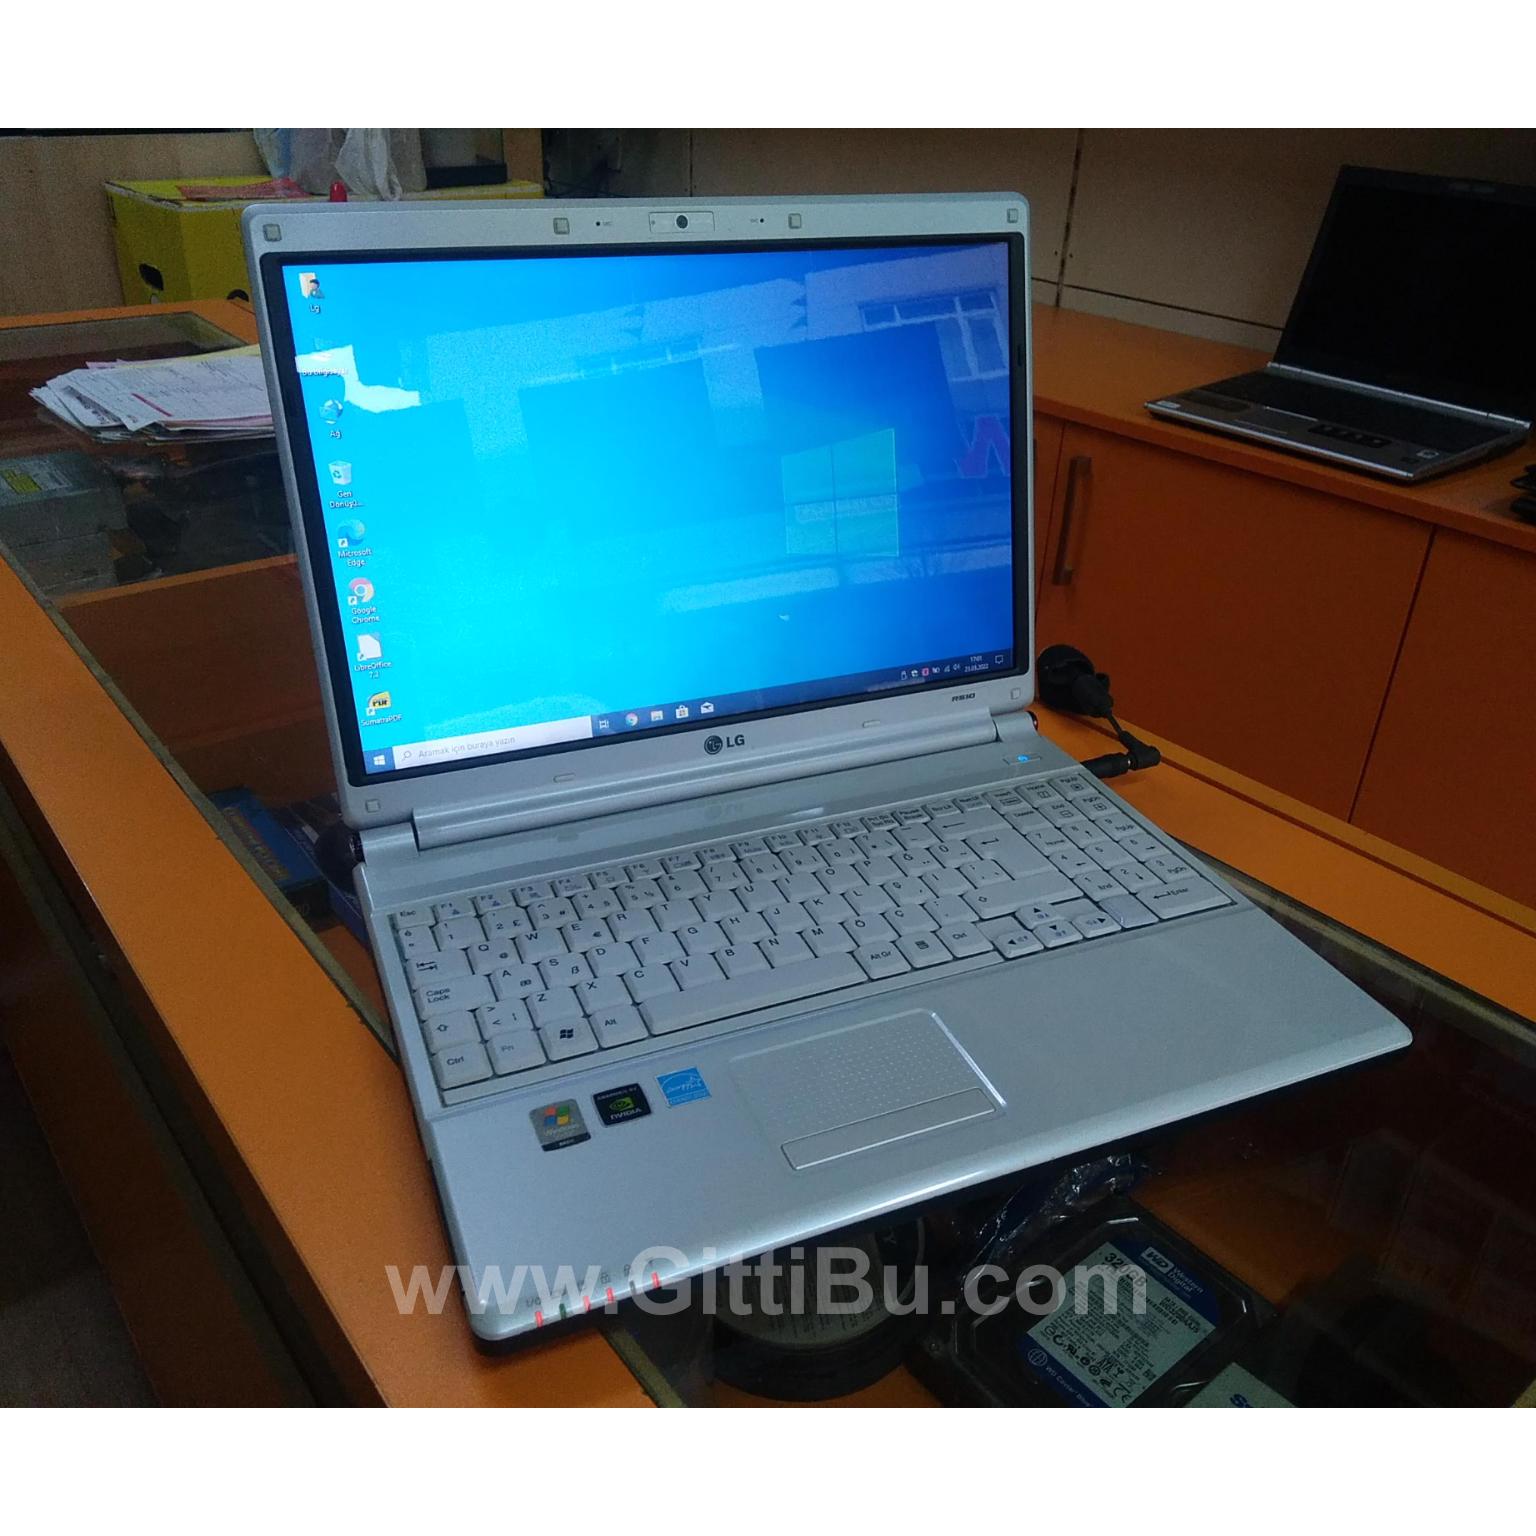 Lg R510 Laptop